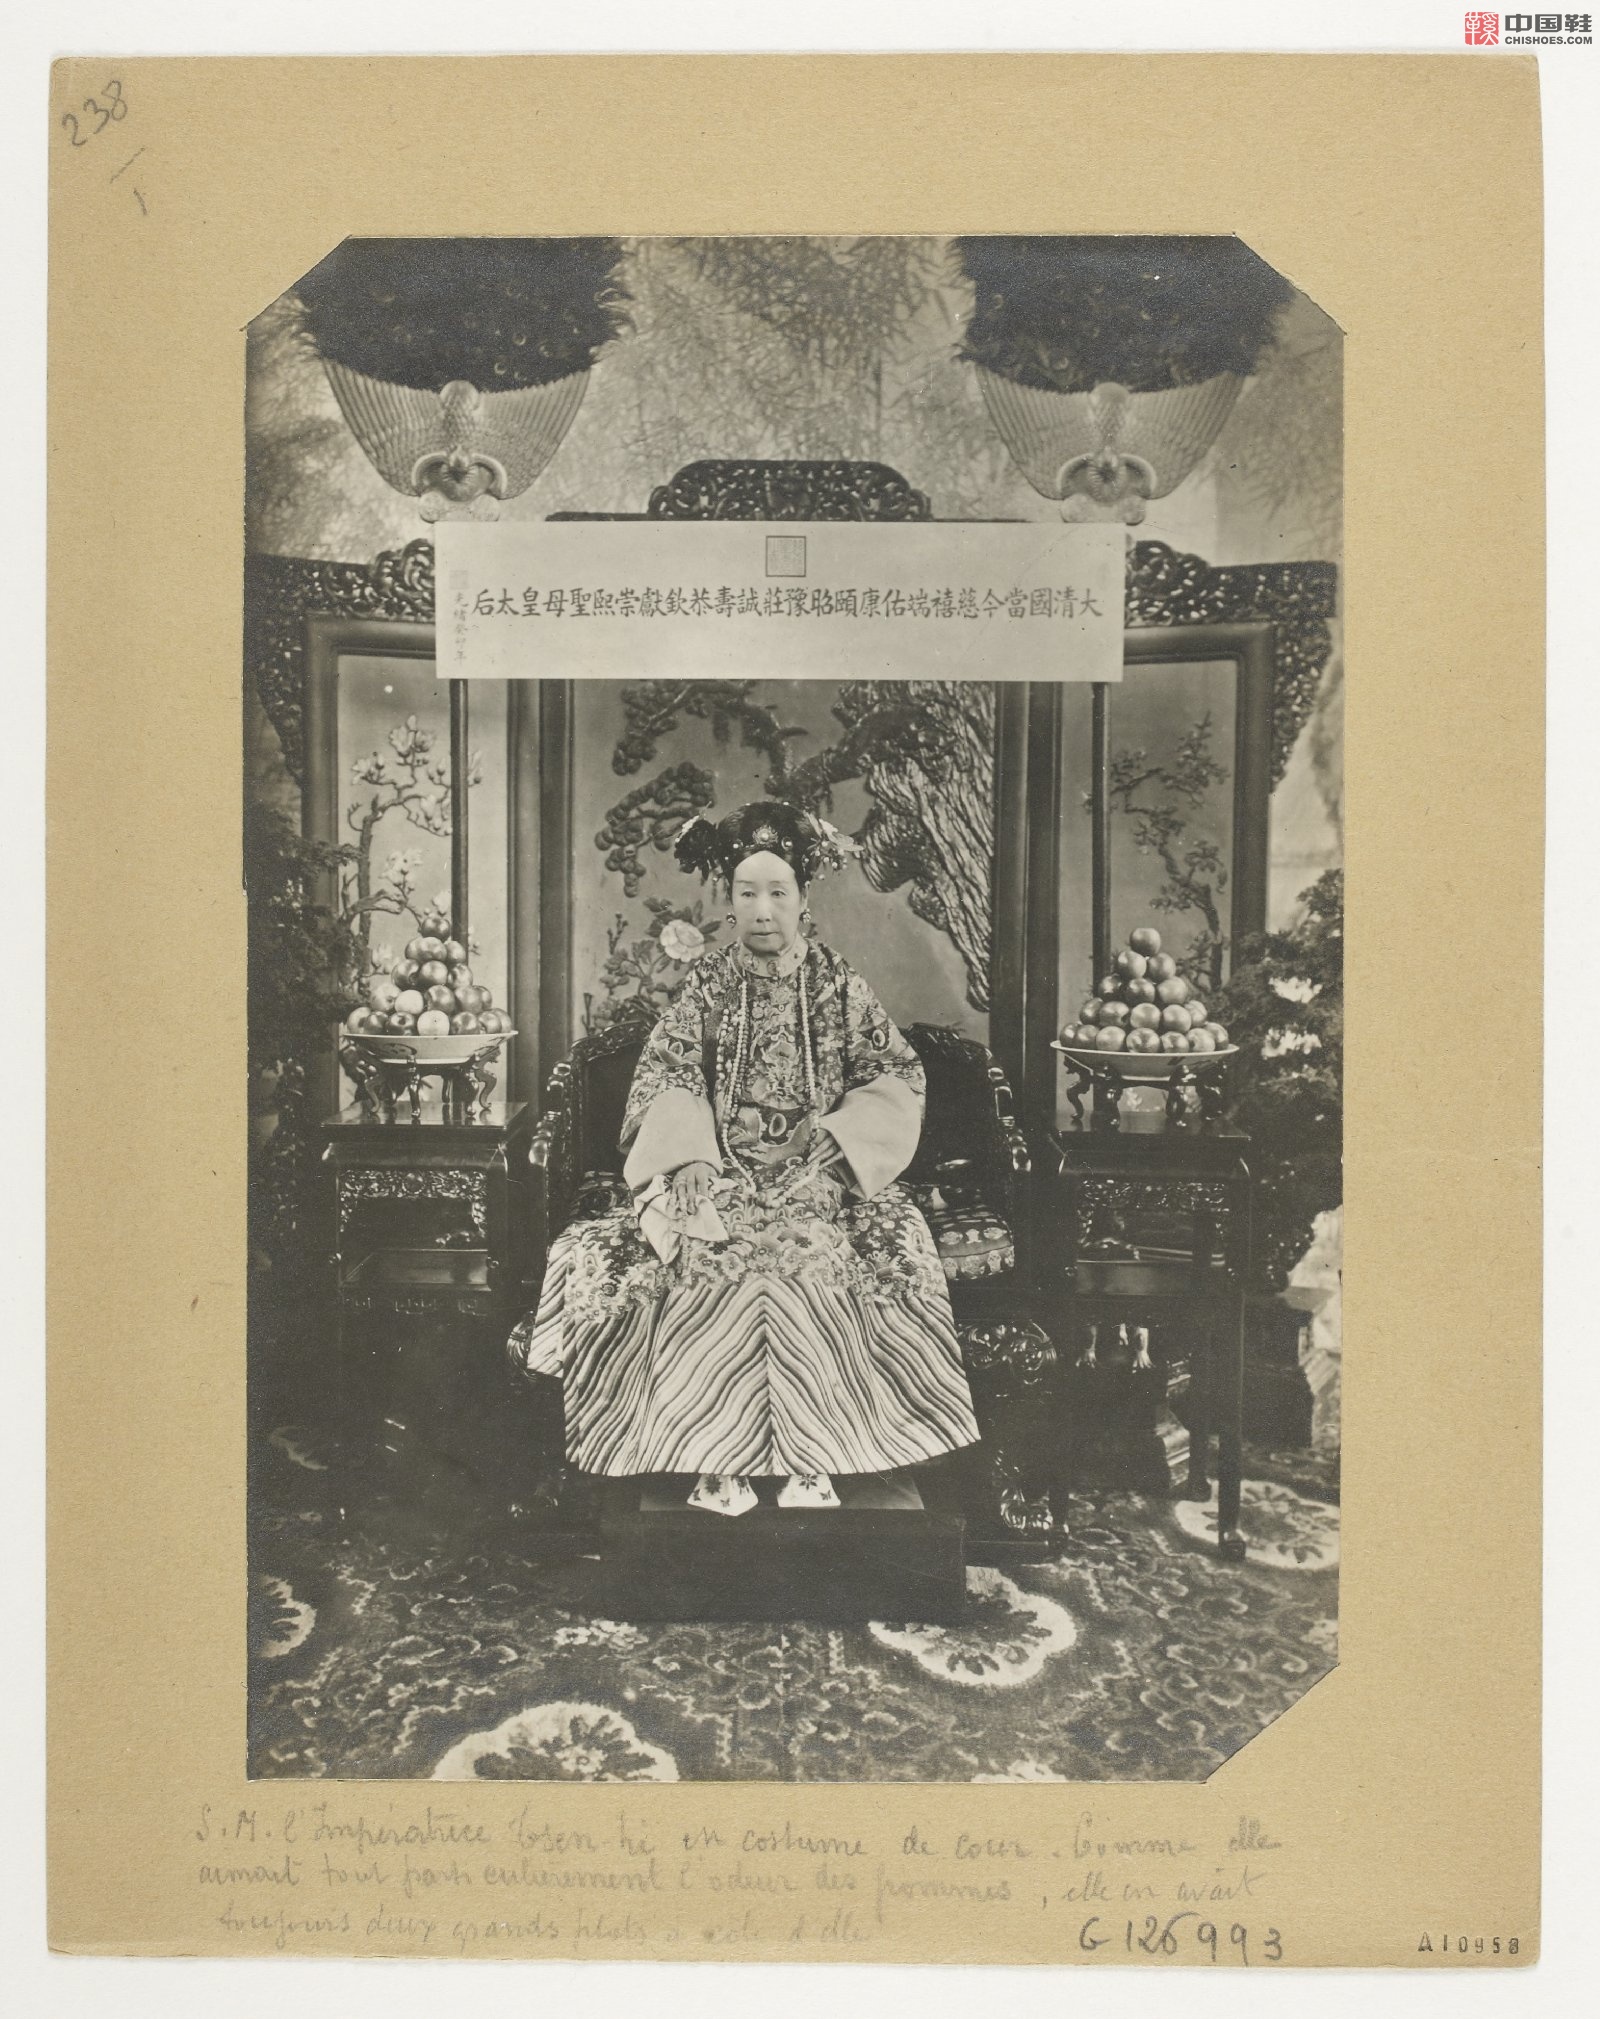 拉里贝的中国影像记录.415幅.By Firmin Laribe.1900-1910年_Page_025.jpg